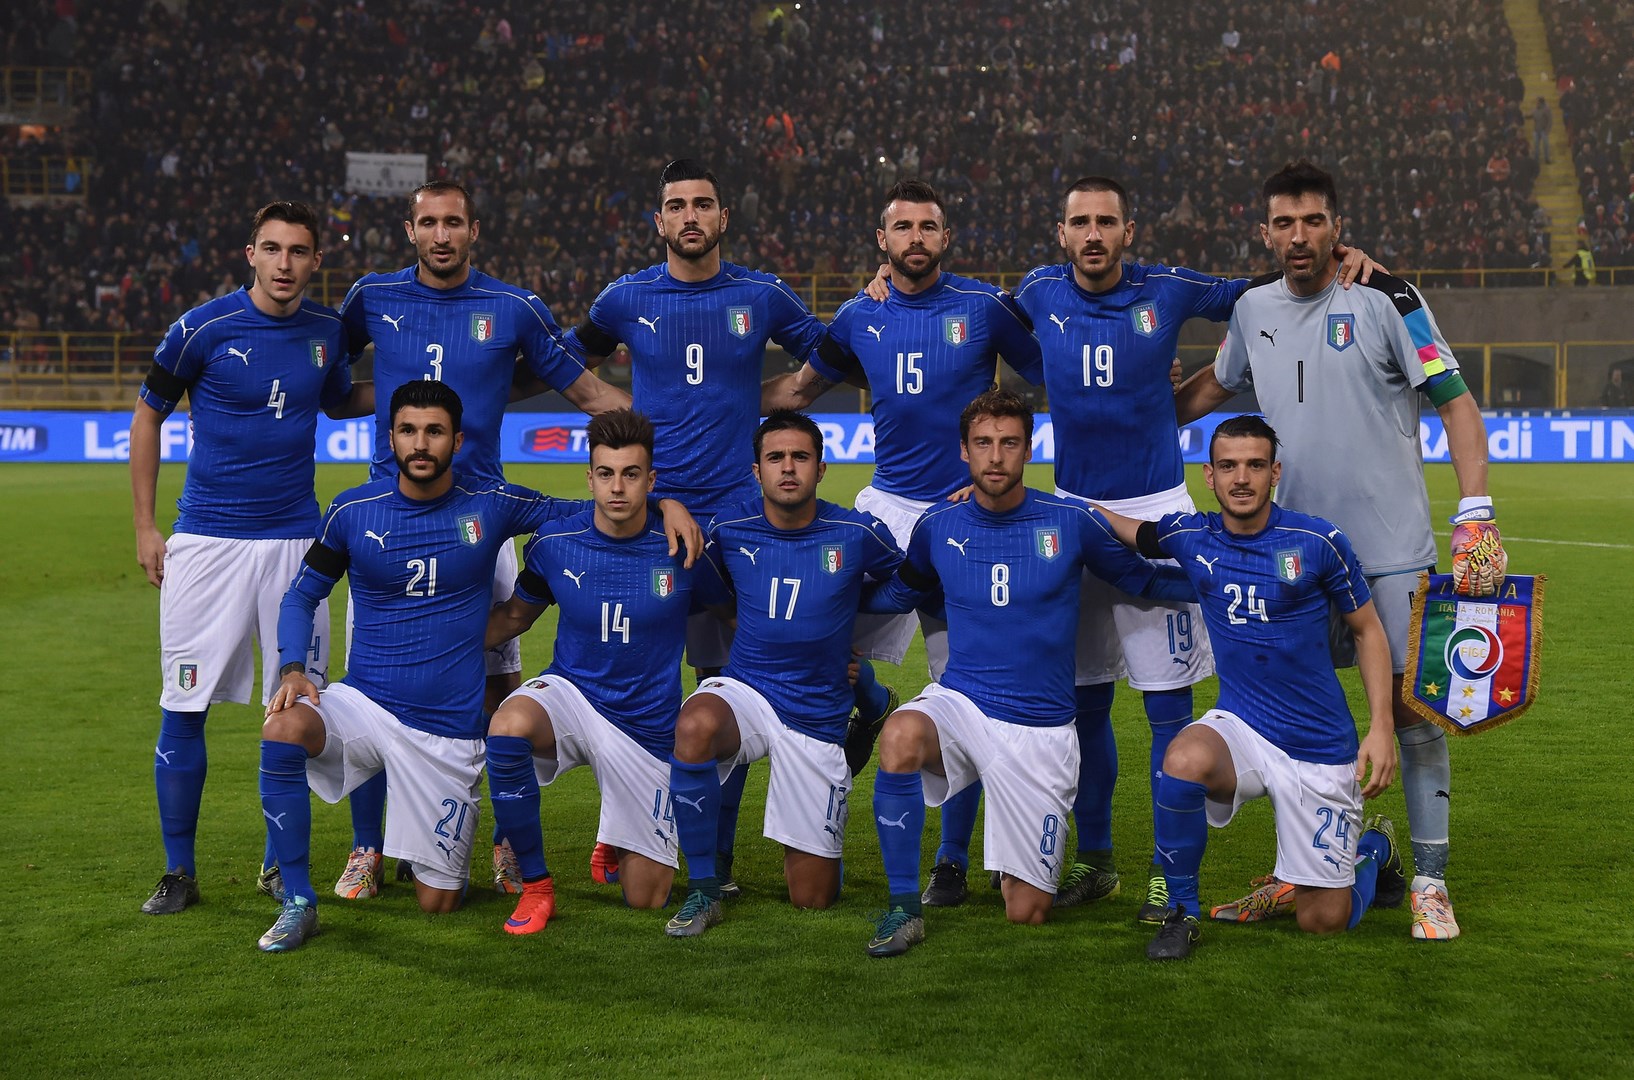 Sorteggio Europei 2016: Italia in 2a fascia, rischio Spagna